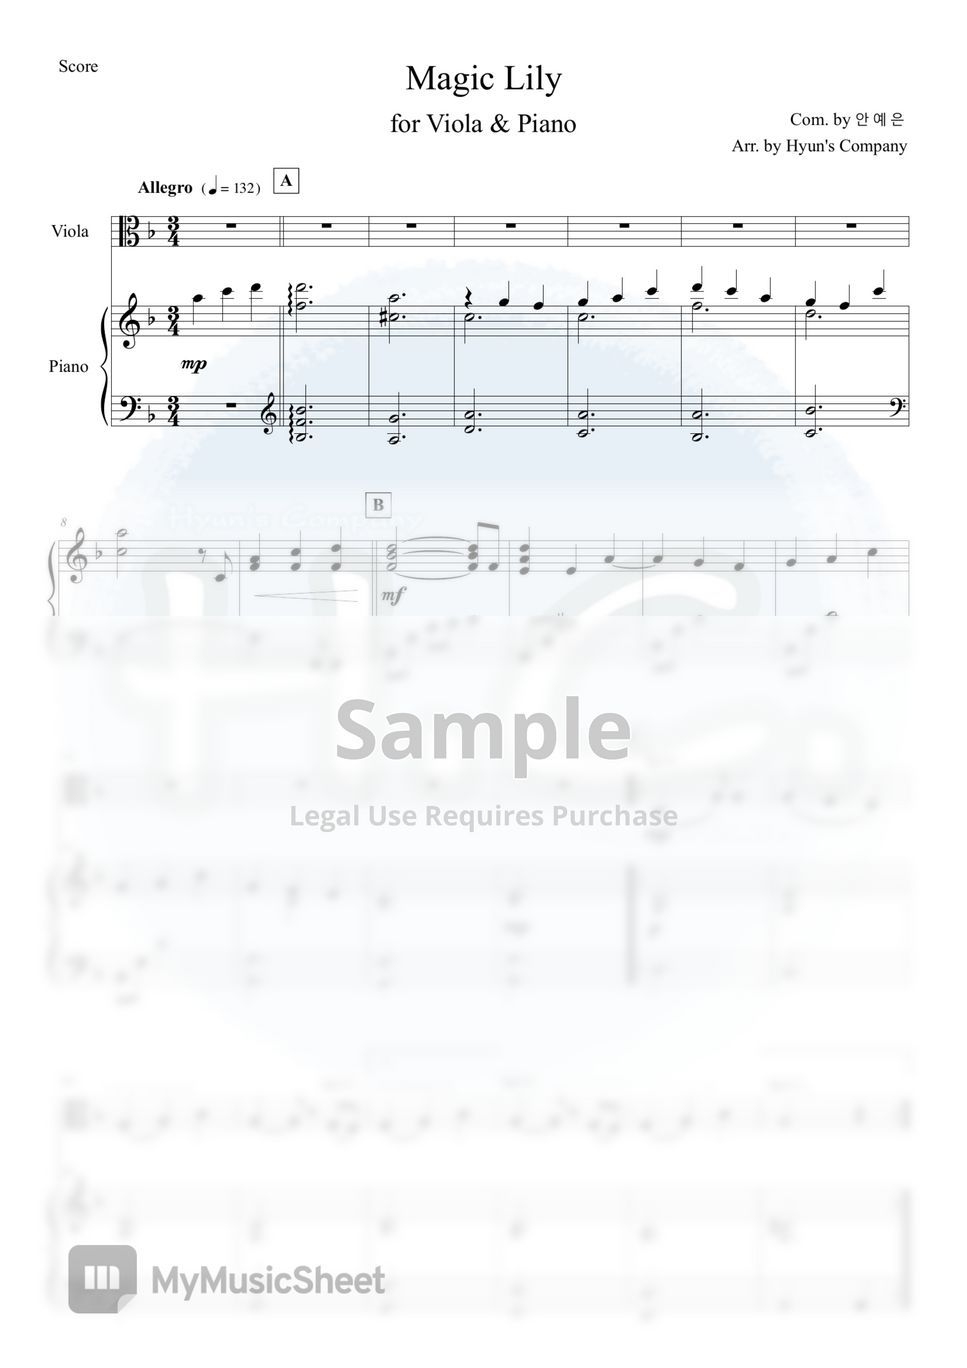 안예은 - 상사화 for Viola & Piano by Hyun's Company